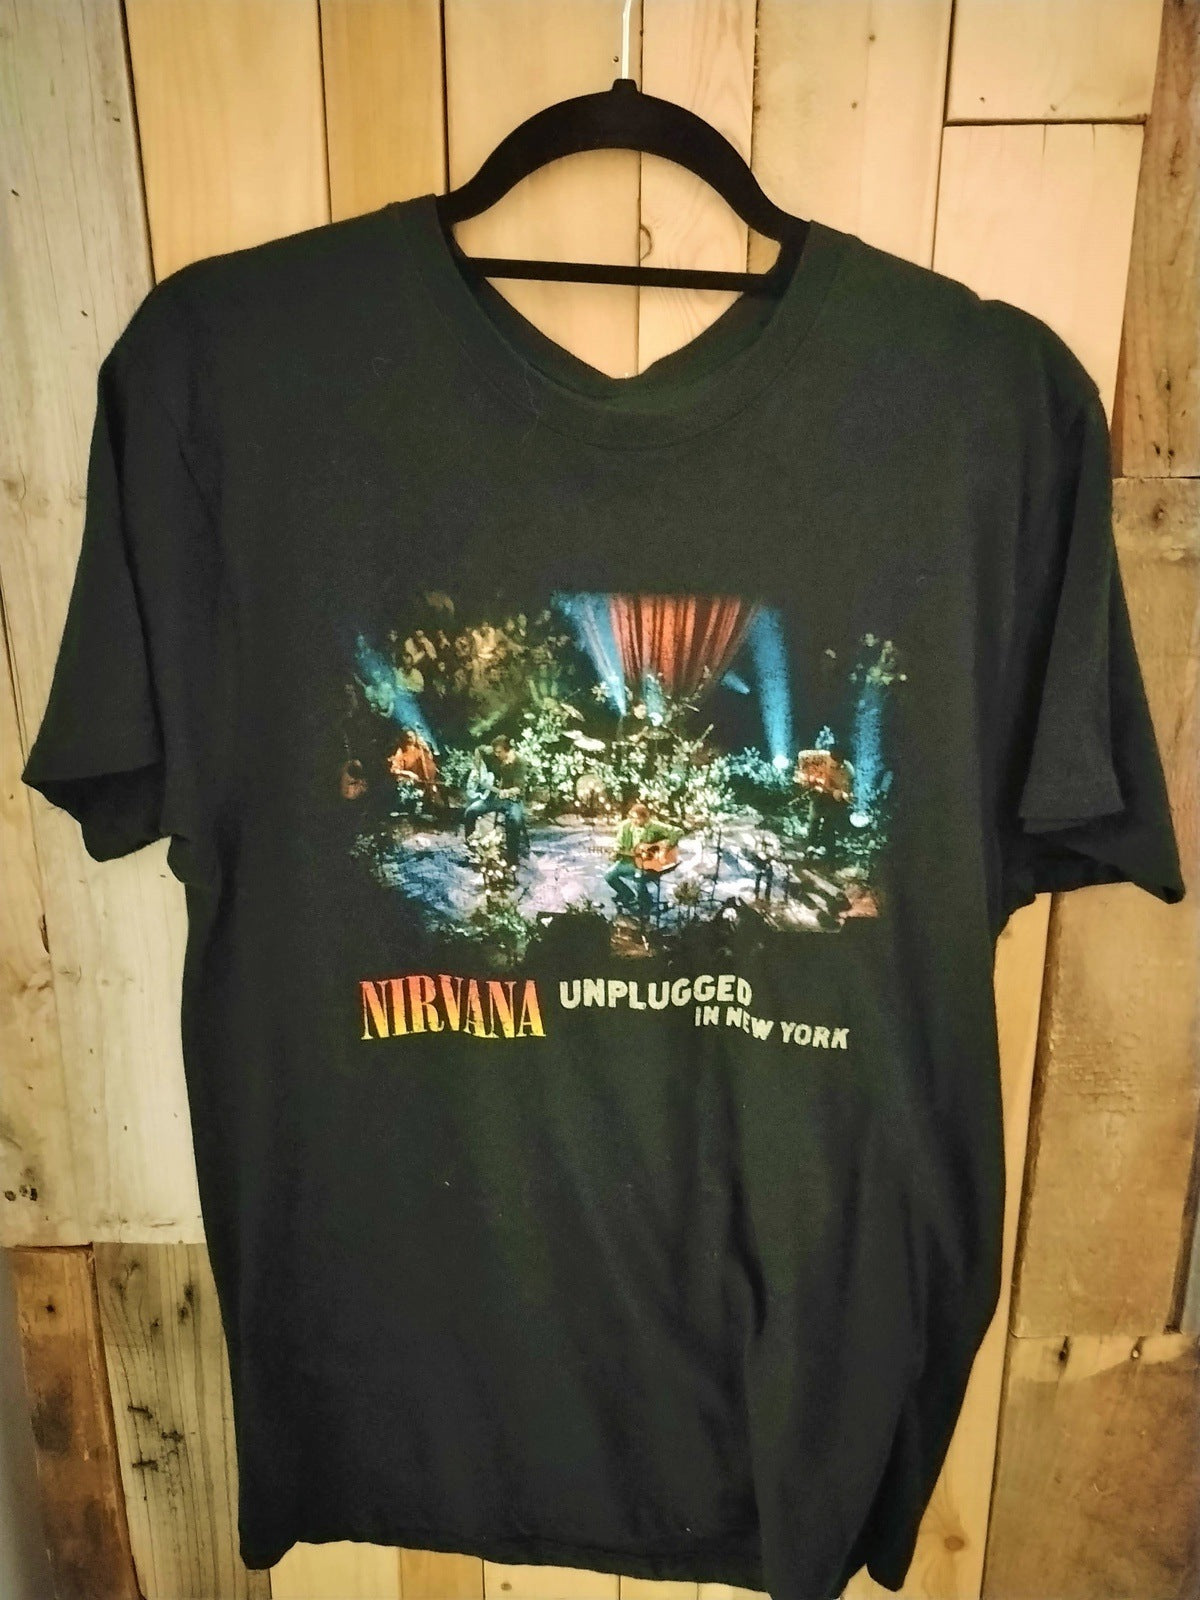 Nirvana Unplugged Official Merchandise T Shirt Size Medium